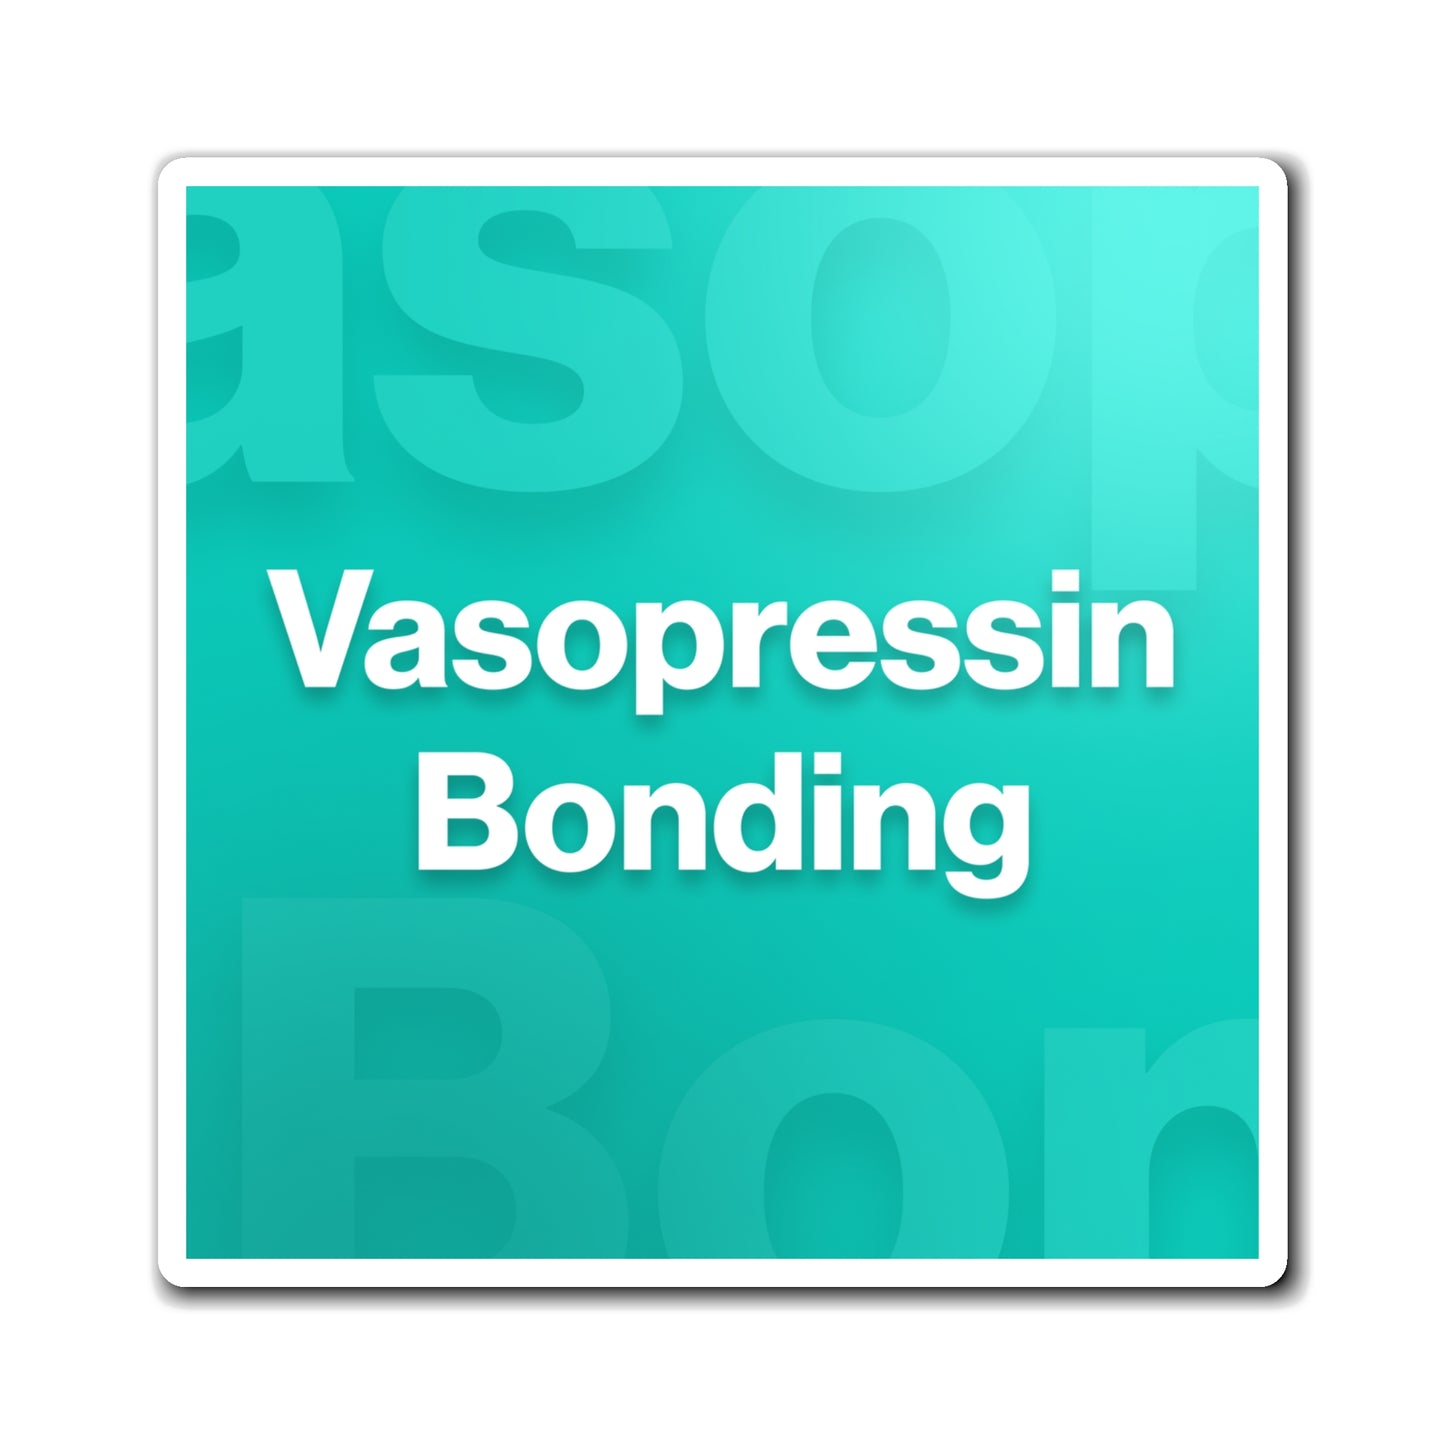 Vasopressin Bonding Magnet